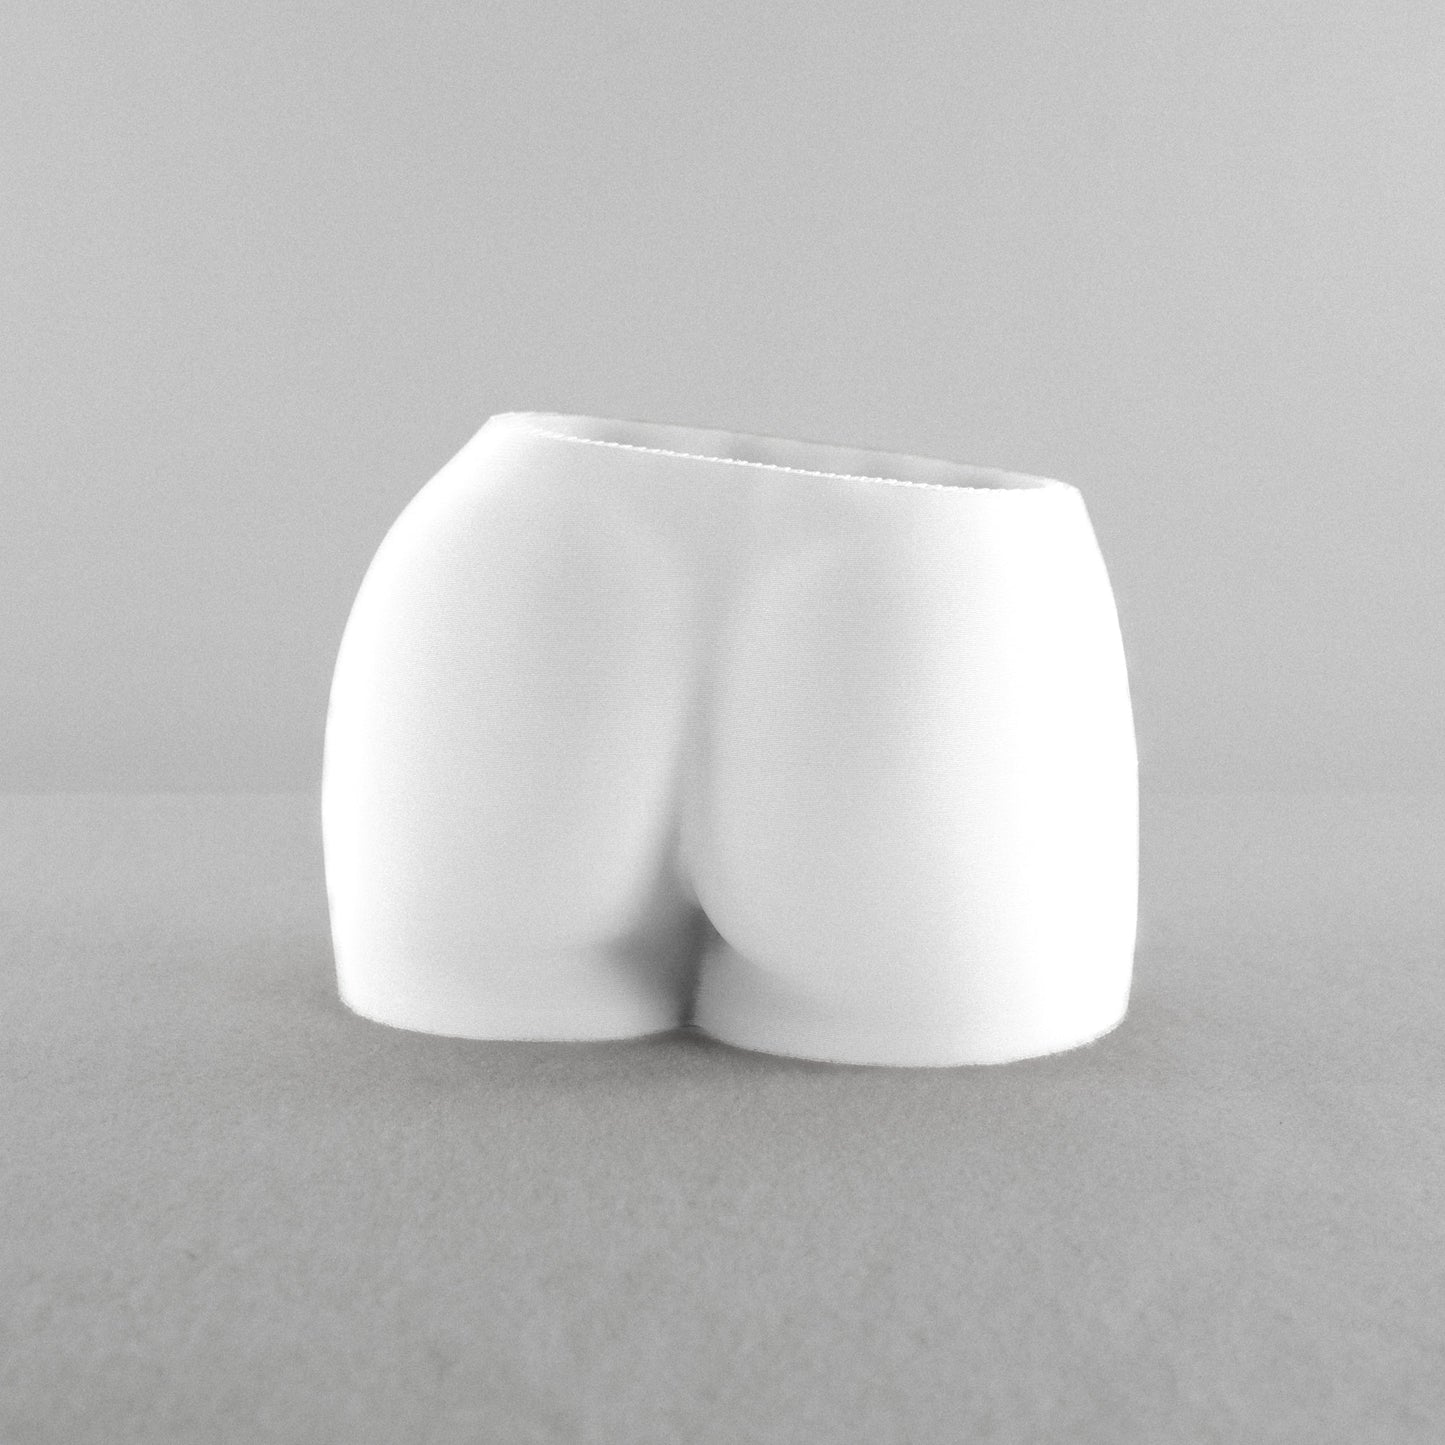 Feminine Butt Planter - Rosebud HomeGoods White With Drip Tray MODERN HOME GOOD